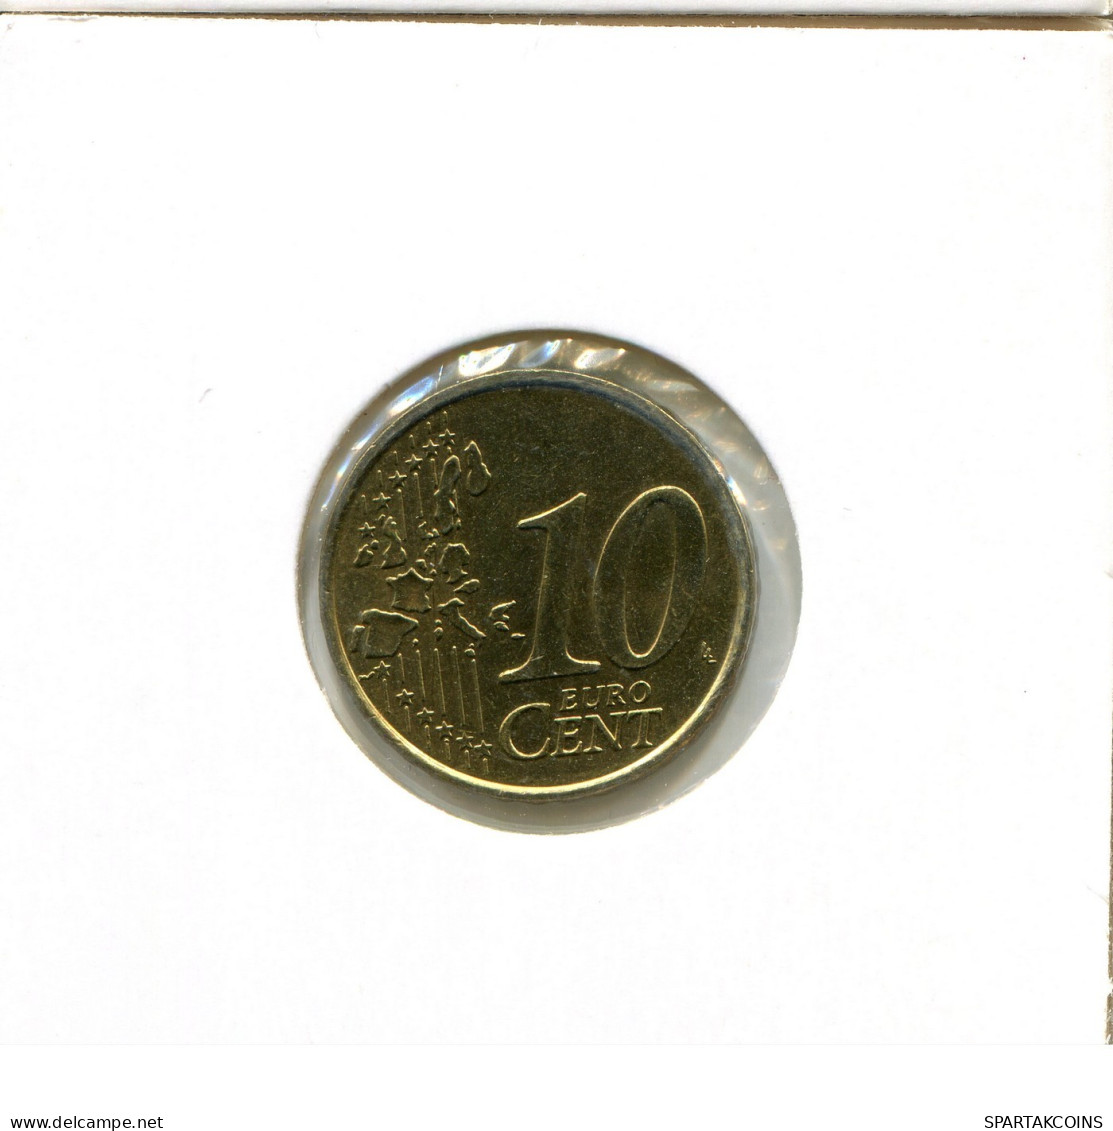 10 EURO CENTS 2002 FRANCE Coin Coin #EU445.U.A - France